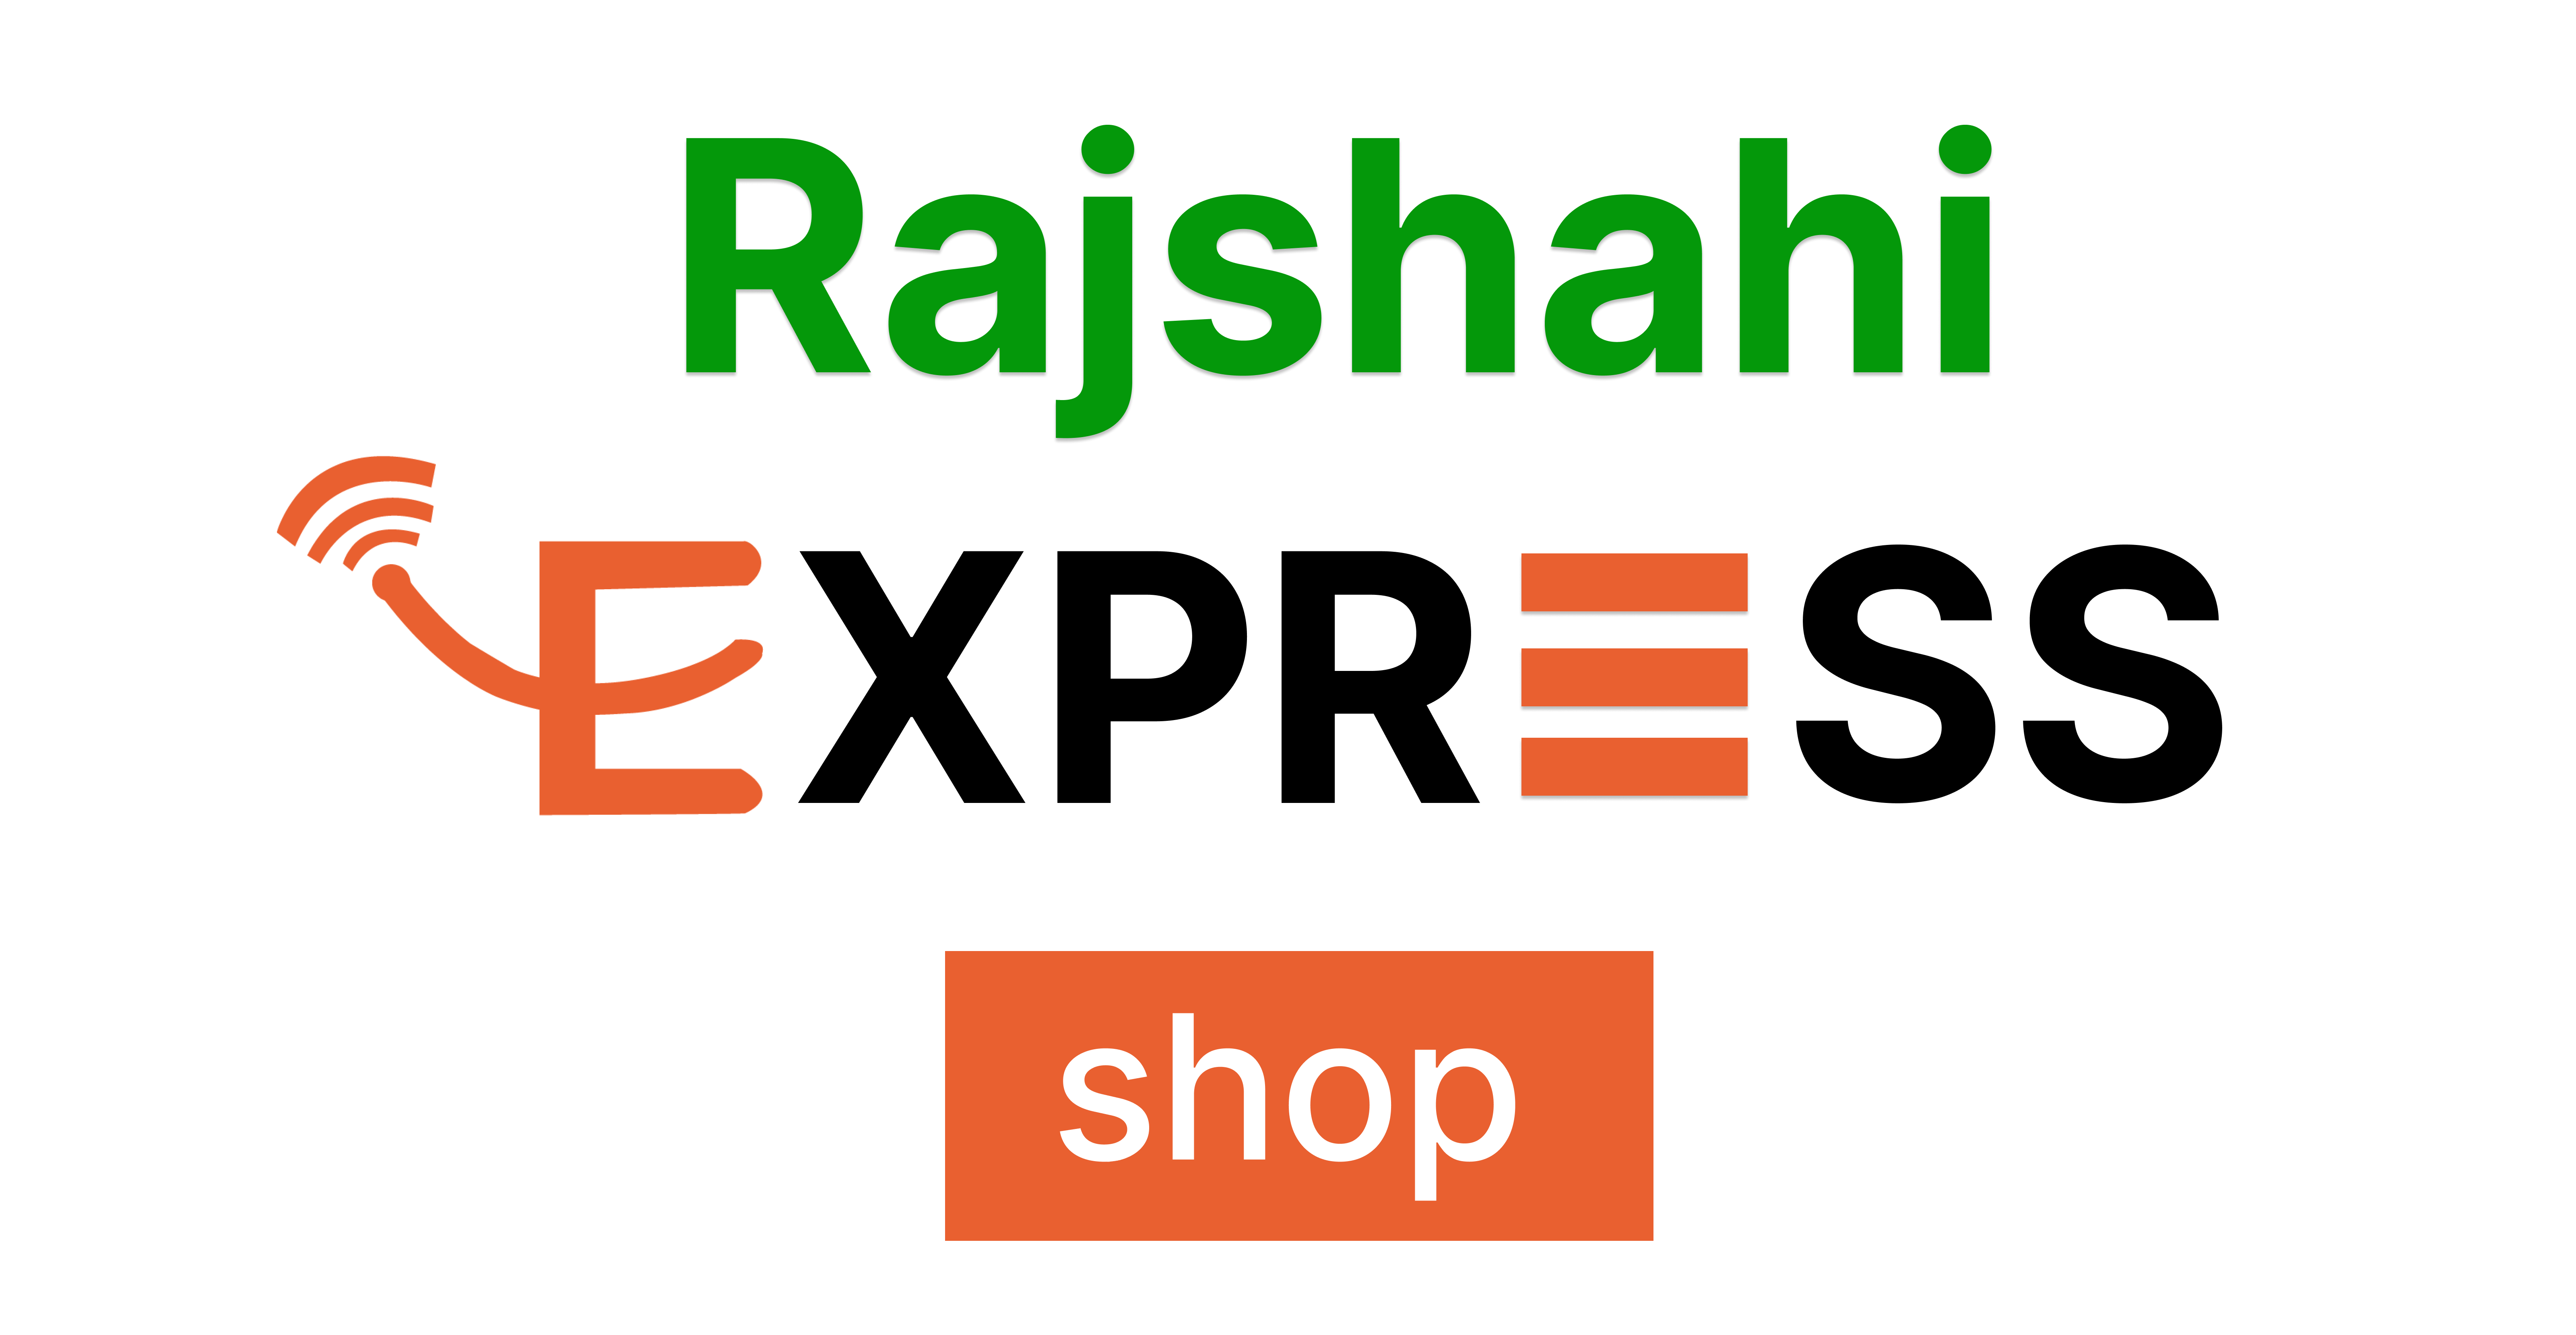 Rajshai Express Shop